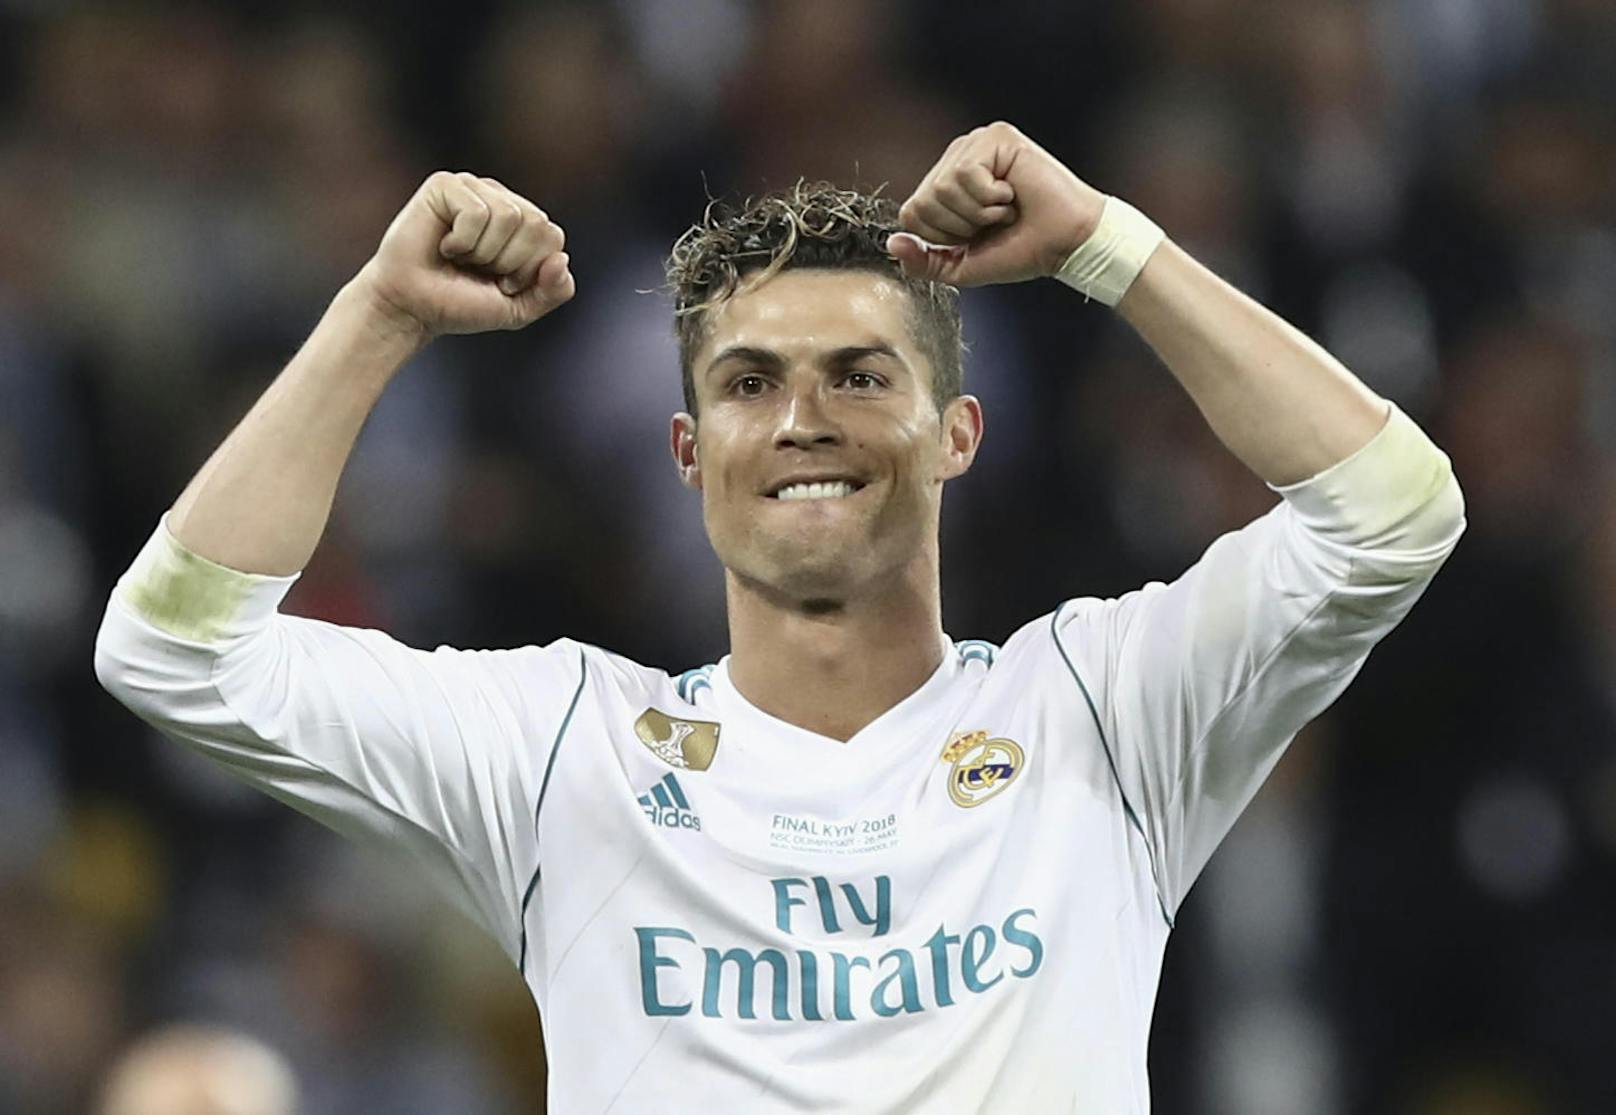 Eines ist klar: Cristiano Ronaldo verlässt Real Madrid als Legende. Seine Bilanz: 450 Tore in 438 Spielen. Das dieser Rekord tatsächlich jemals gebrochen wird, ist unwahrscheinlich.